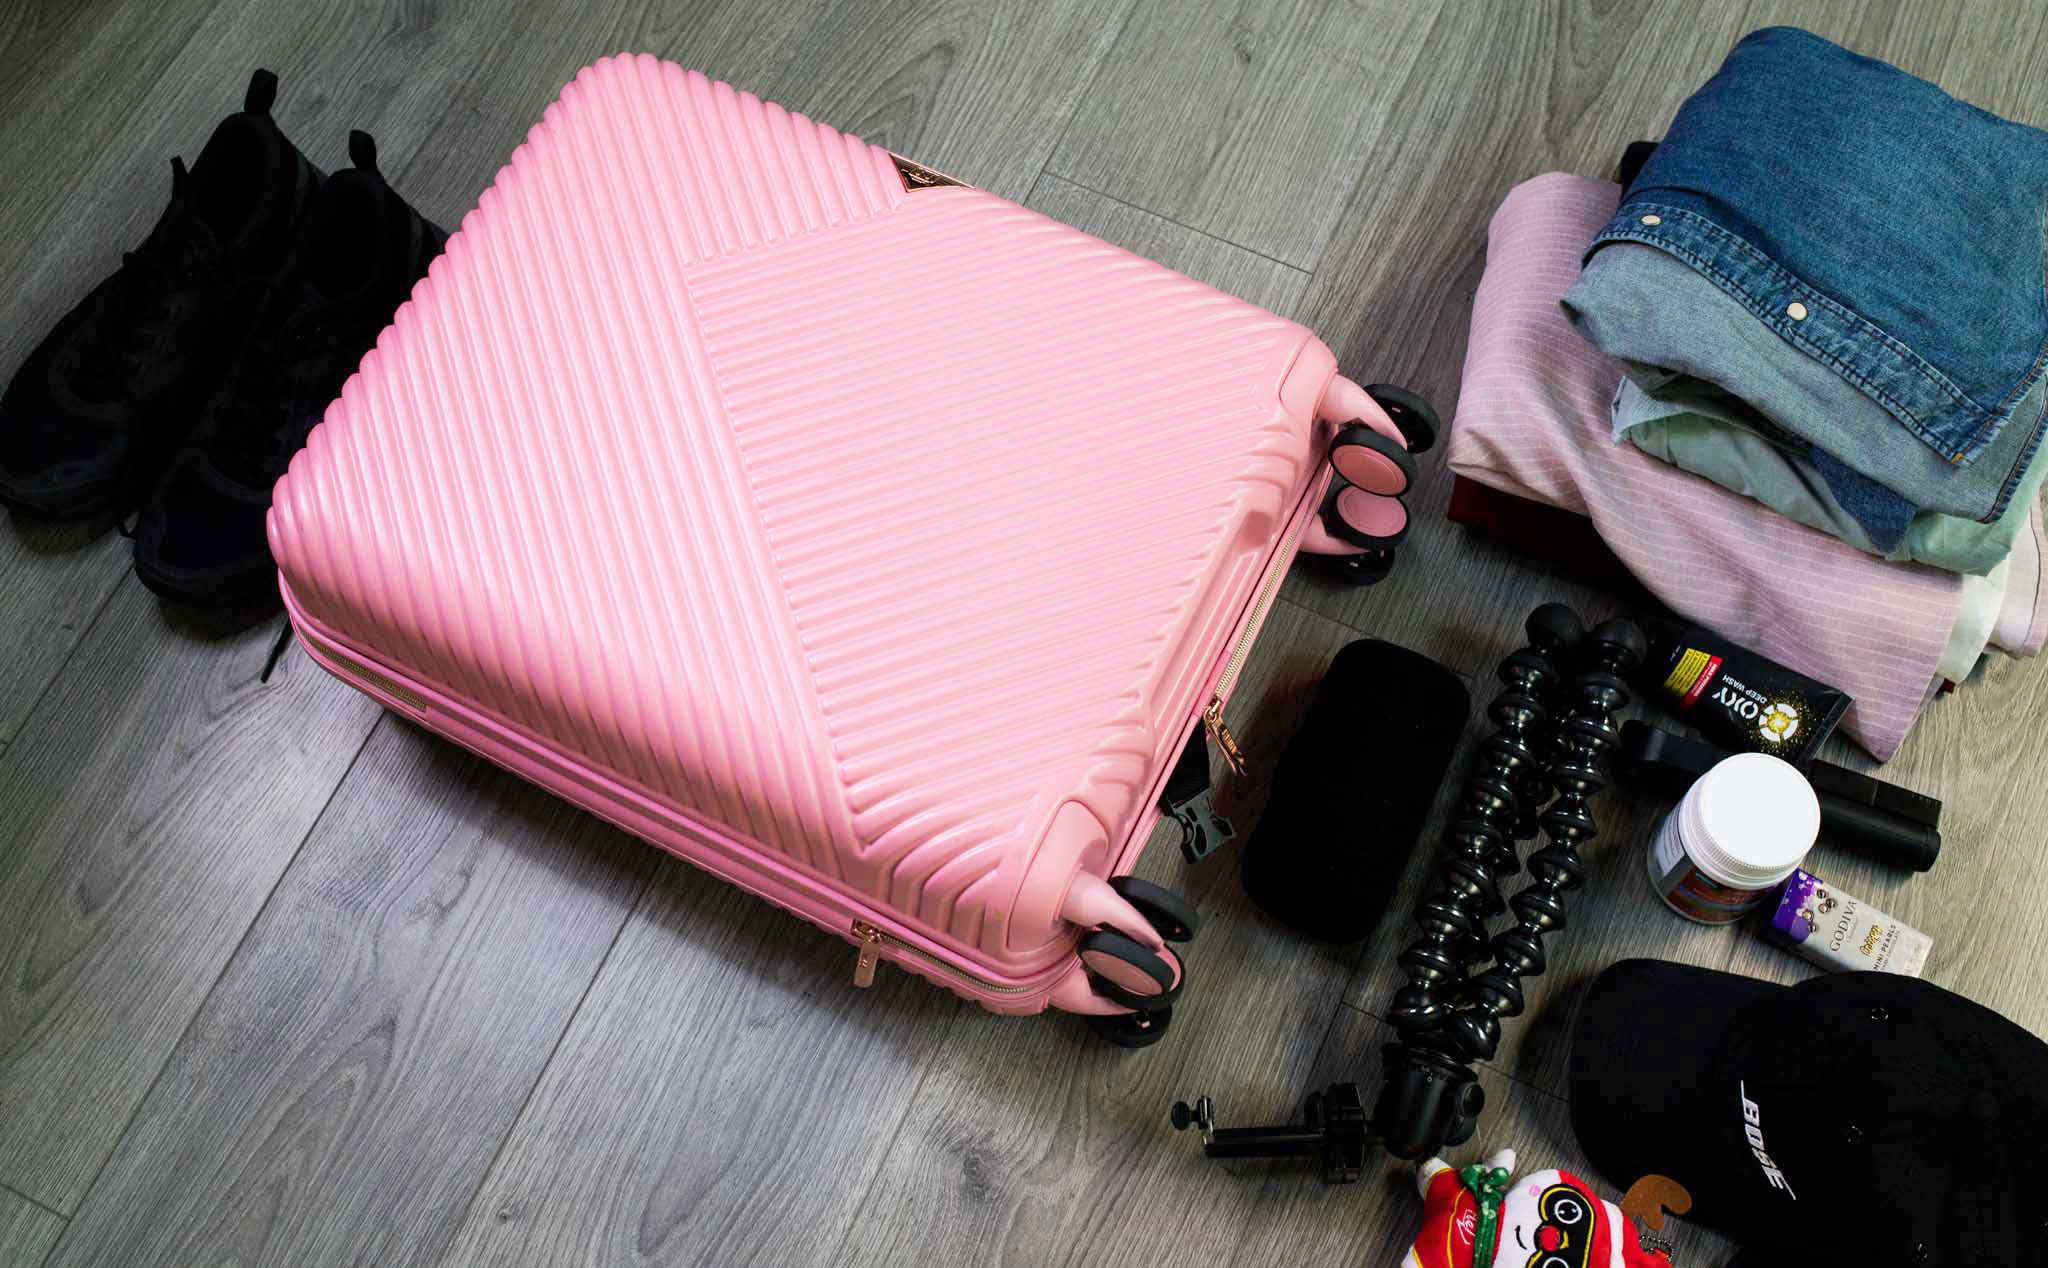 Chuẩn bị cho chuyến đi du lịch của bạn không chỉ là bỏ đồ vào vali mà còn phải đảm bảo rằng bạn đã sắm đủ đồ cần thiết. Hãy xem qua hình ảnh này để biết những gì bạn nên chuẩn bị trước khi đi du lịch.